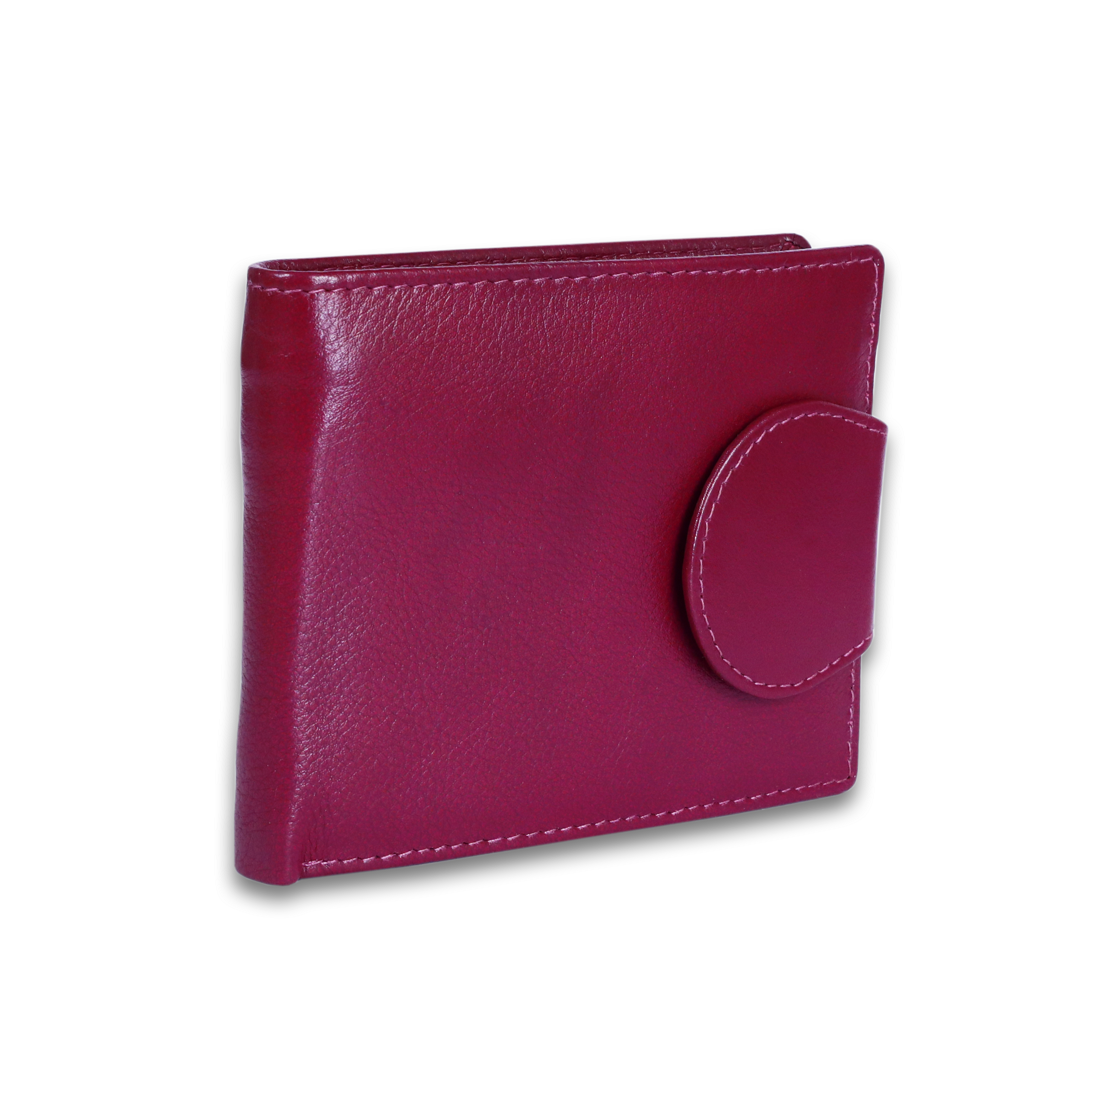 Leather Solid Purple Women Pocket Wallet